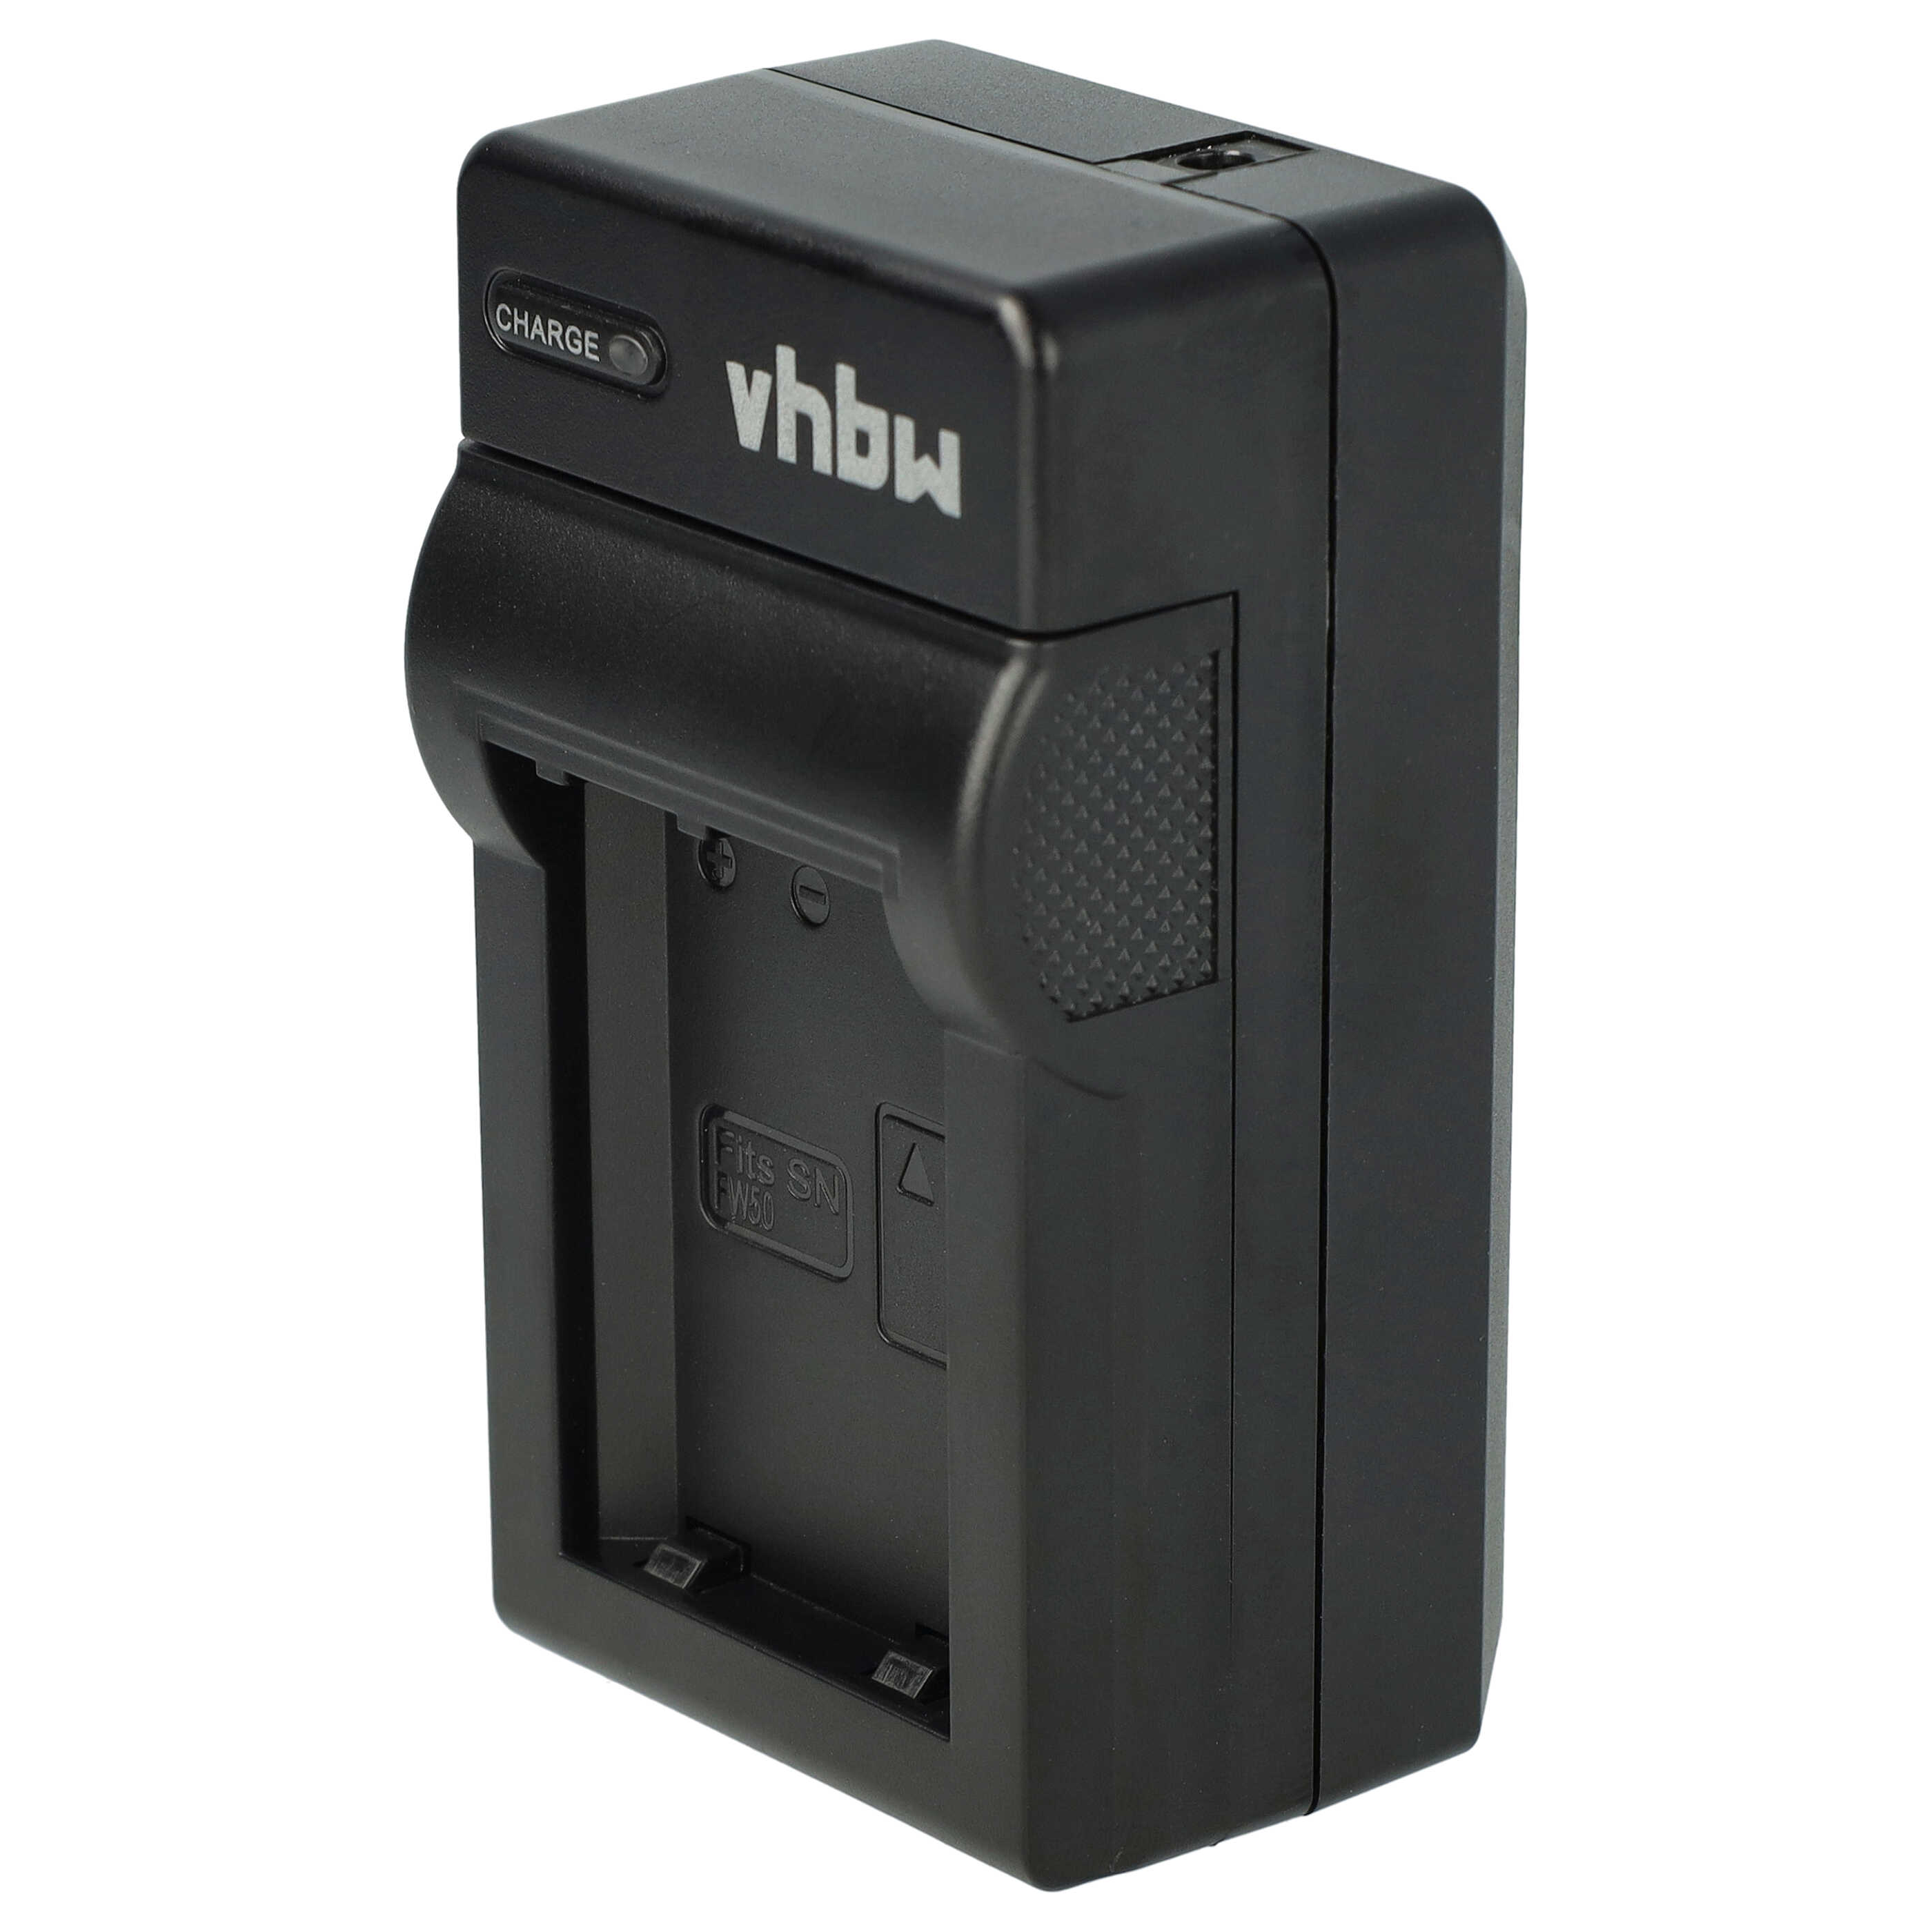 Caricabatterie + adattatore da auto per fotocamera Sony - 0,6A 8,4V 88,5cm